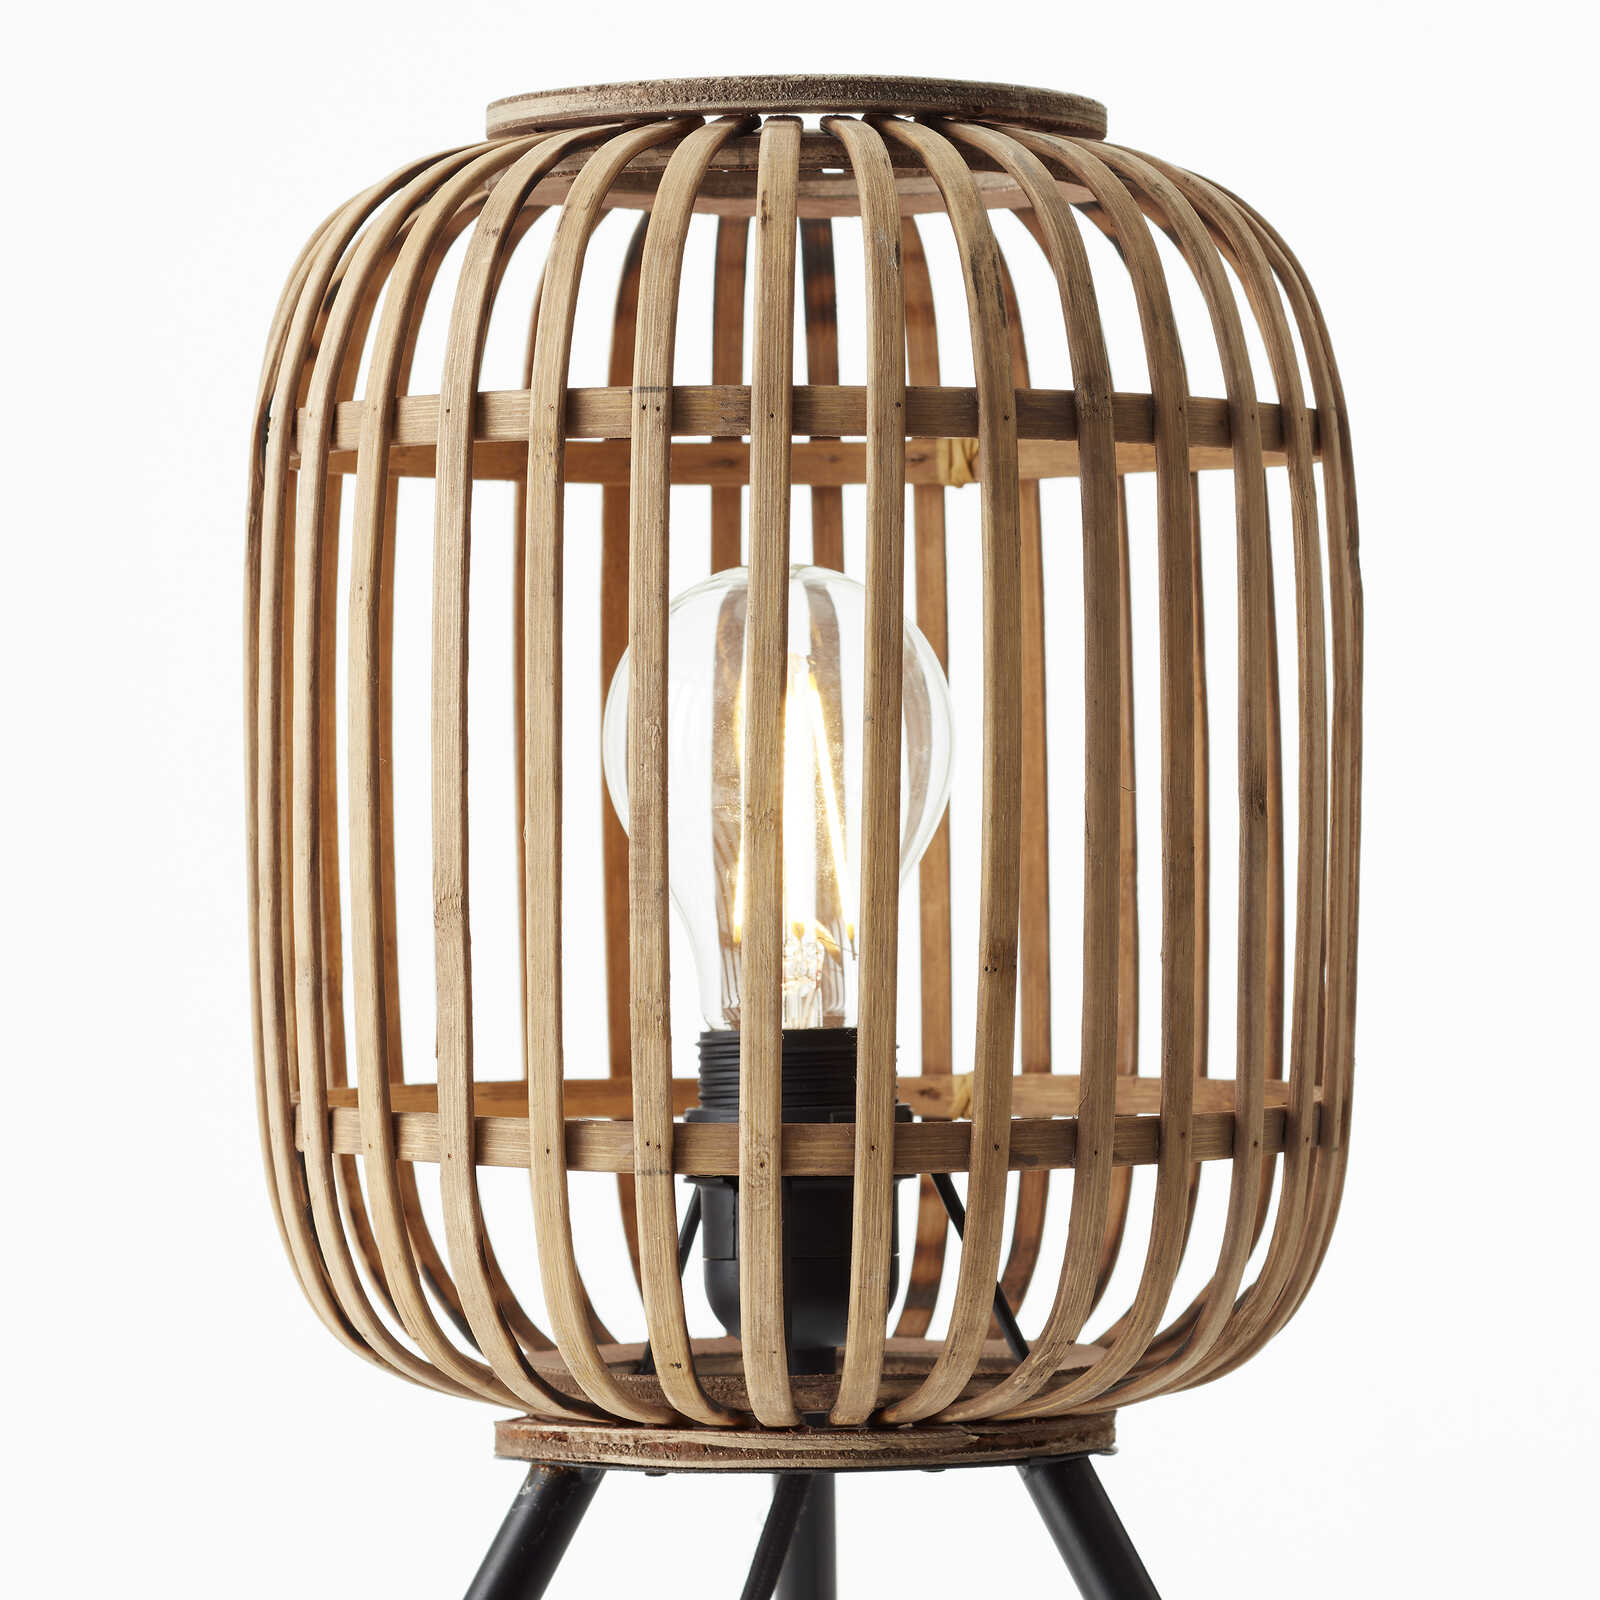             Lámpara de mesa de bambú - Willi 2 - Marrón
        